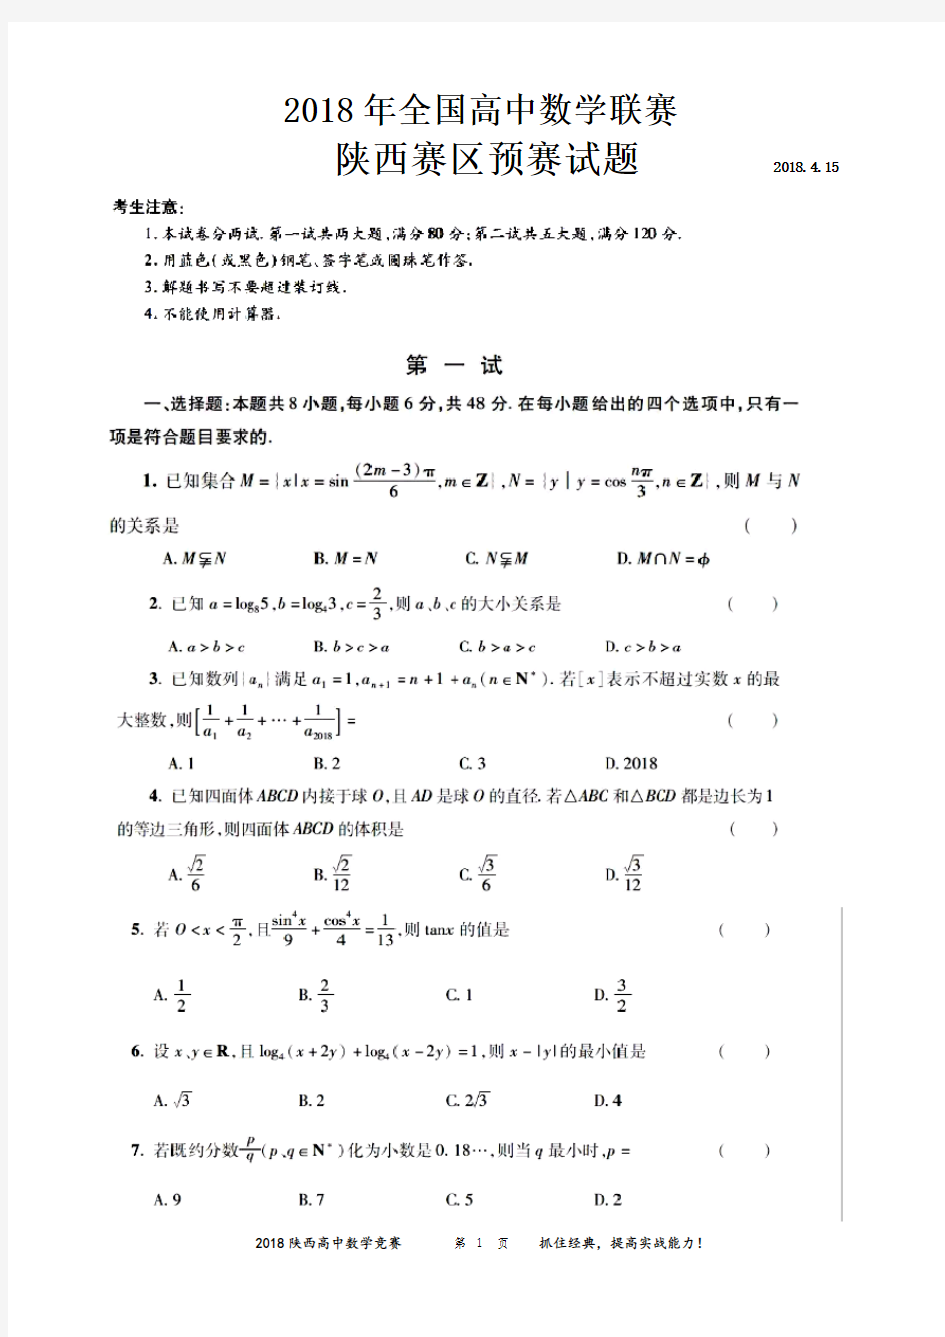 2018陕西高中数学竞赛预赛试题(含答案)